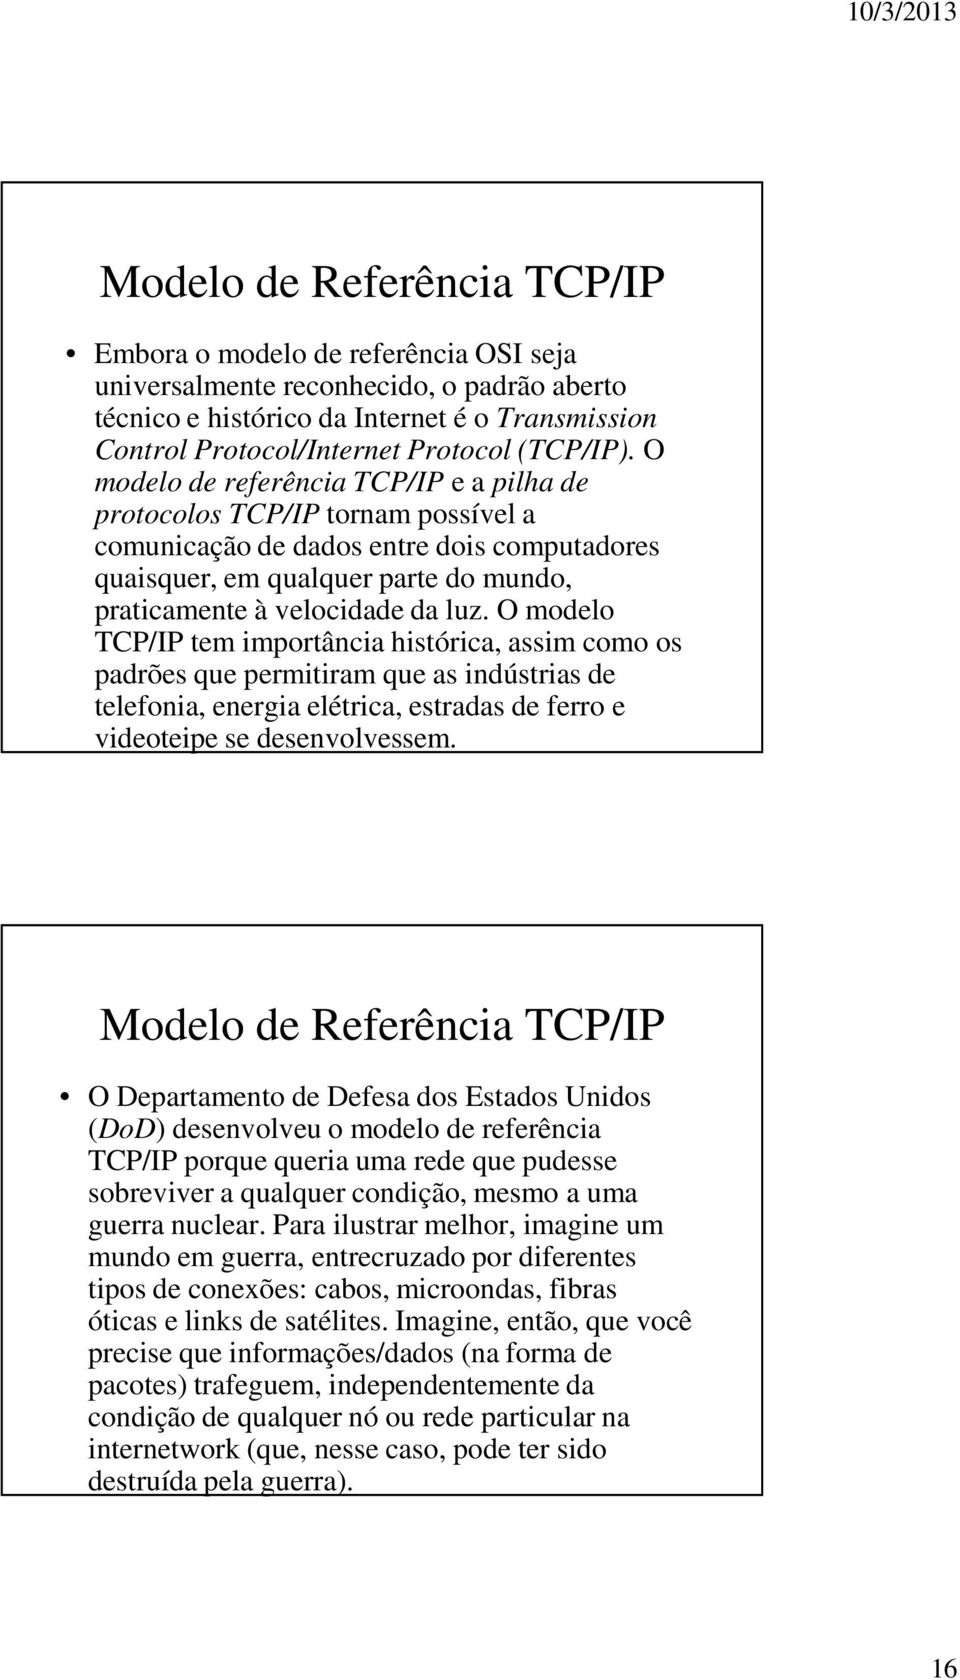 O modelo de referência TCP/IP e a pilha de protocolos TCP/IP tornam possível a comunicação de dados entre dois computadores quaisquer, em qualquer parte do mundo, praticamente à velocidade da luz.